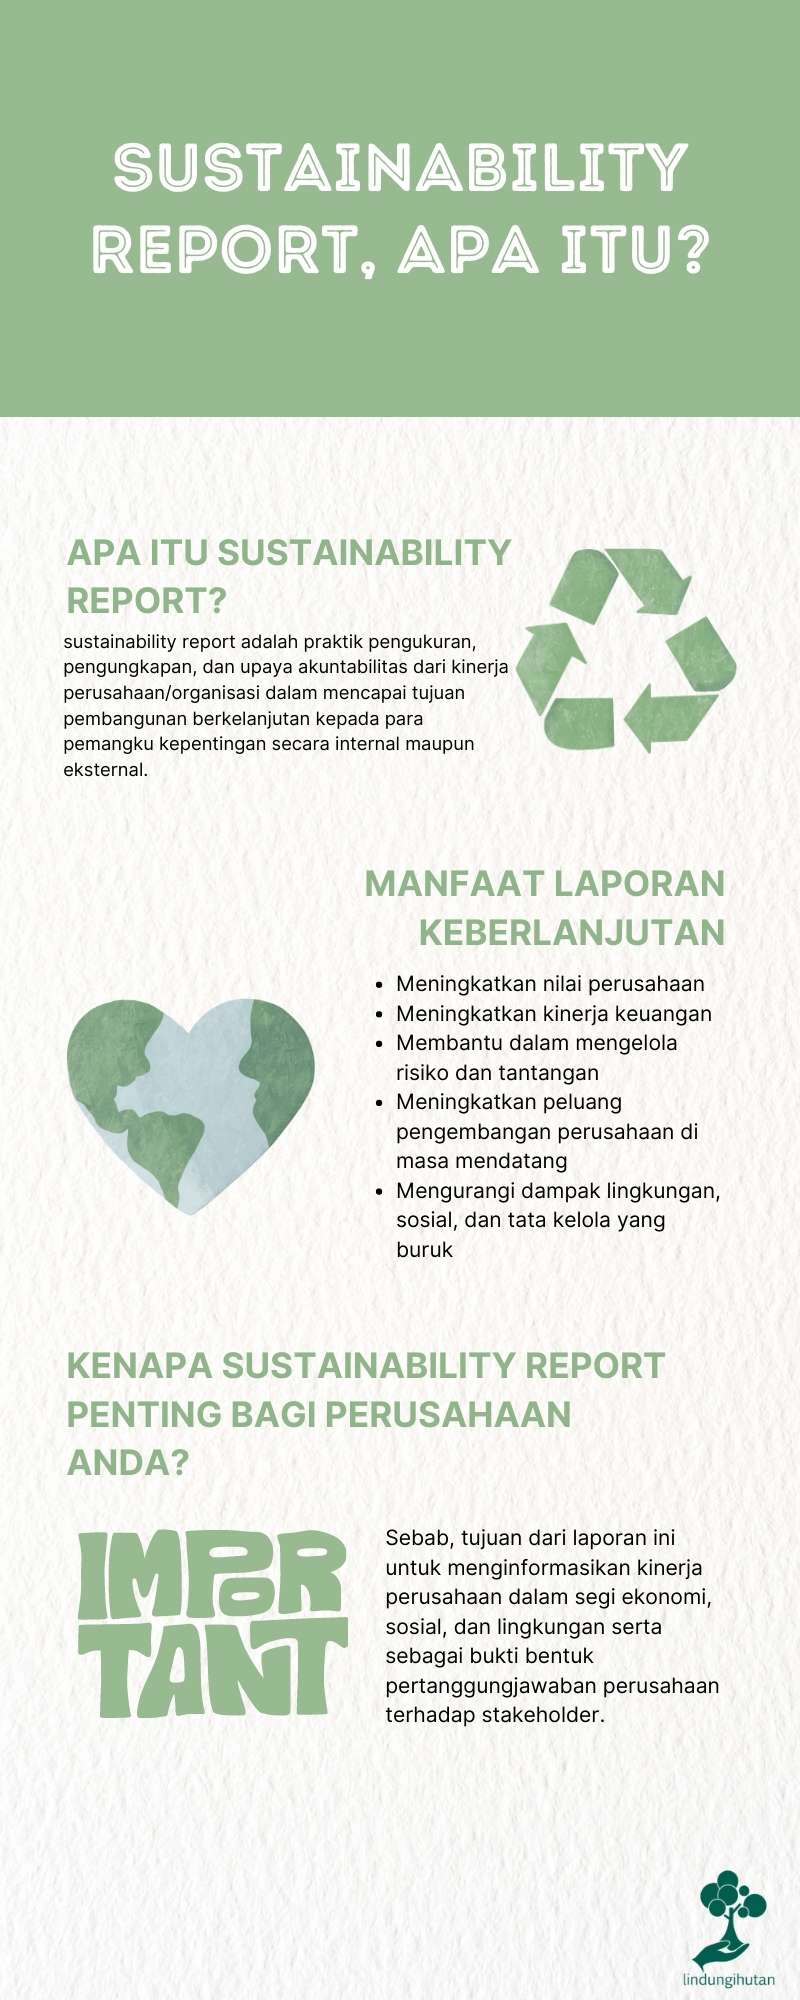 Sustainability report adalah